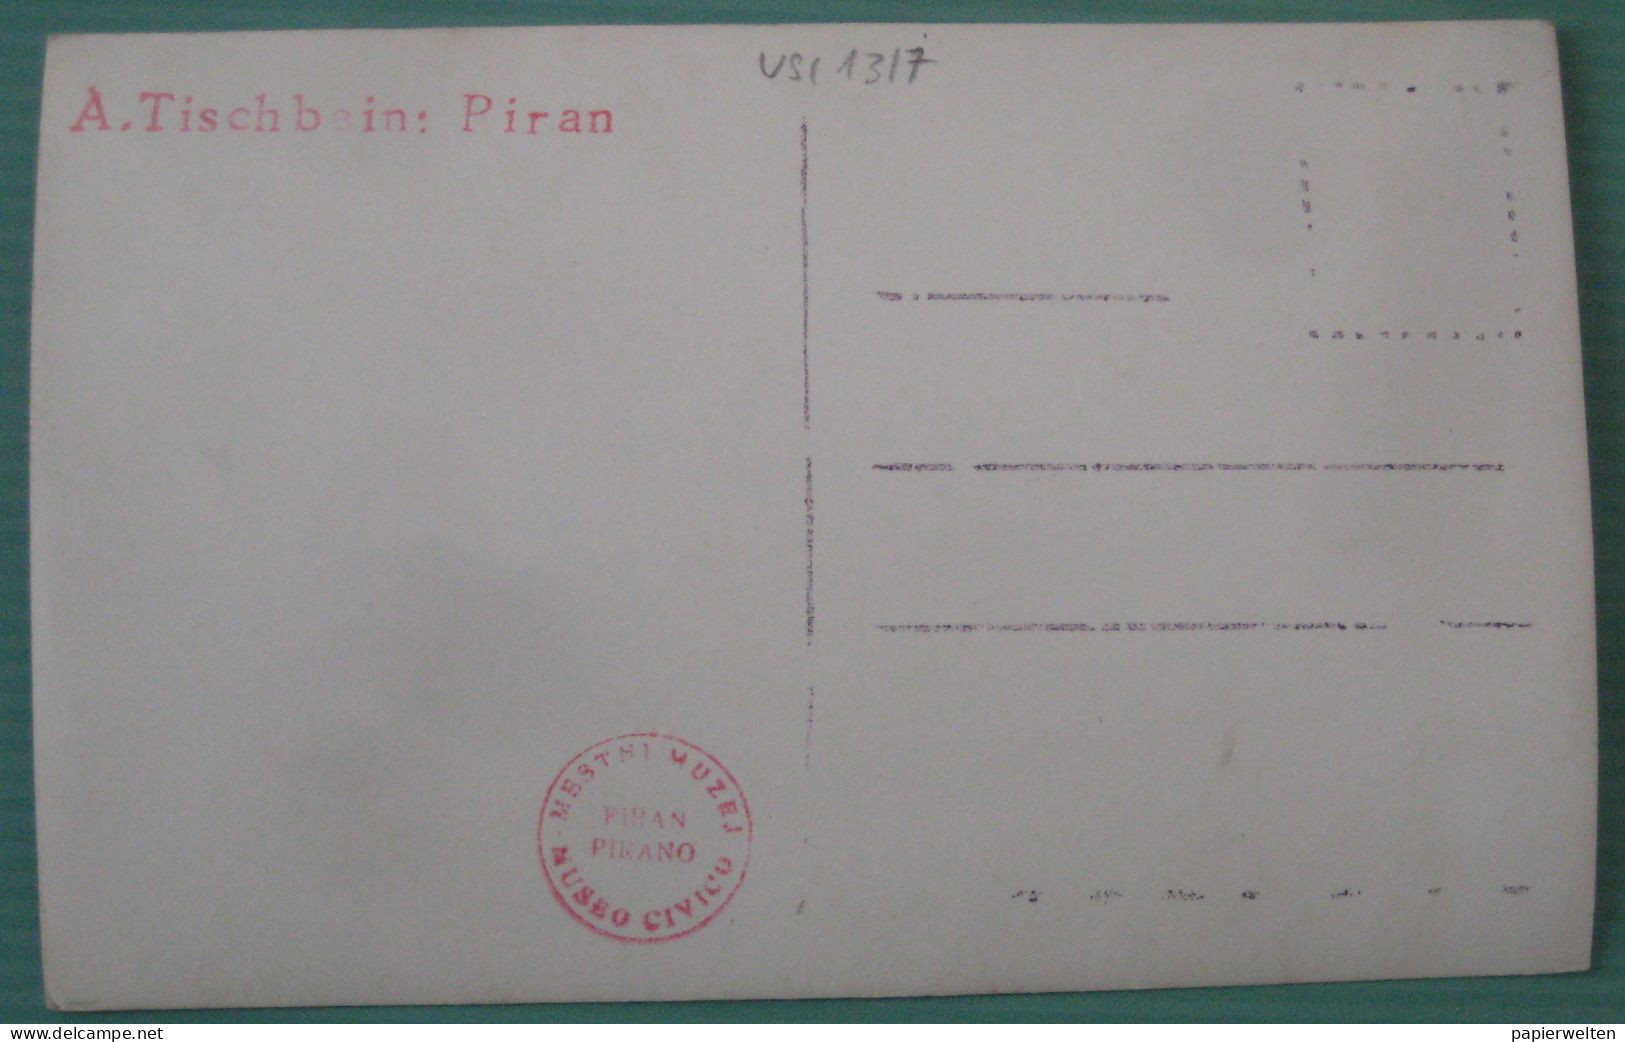 Piran / Pirano - Künstlerkarte (A. Tischbein) Genreszene Am Hafen - Slovenia